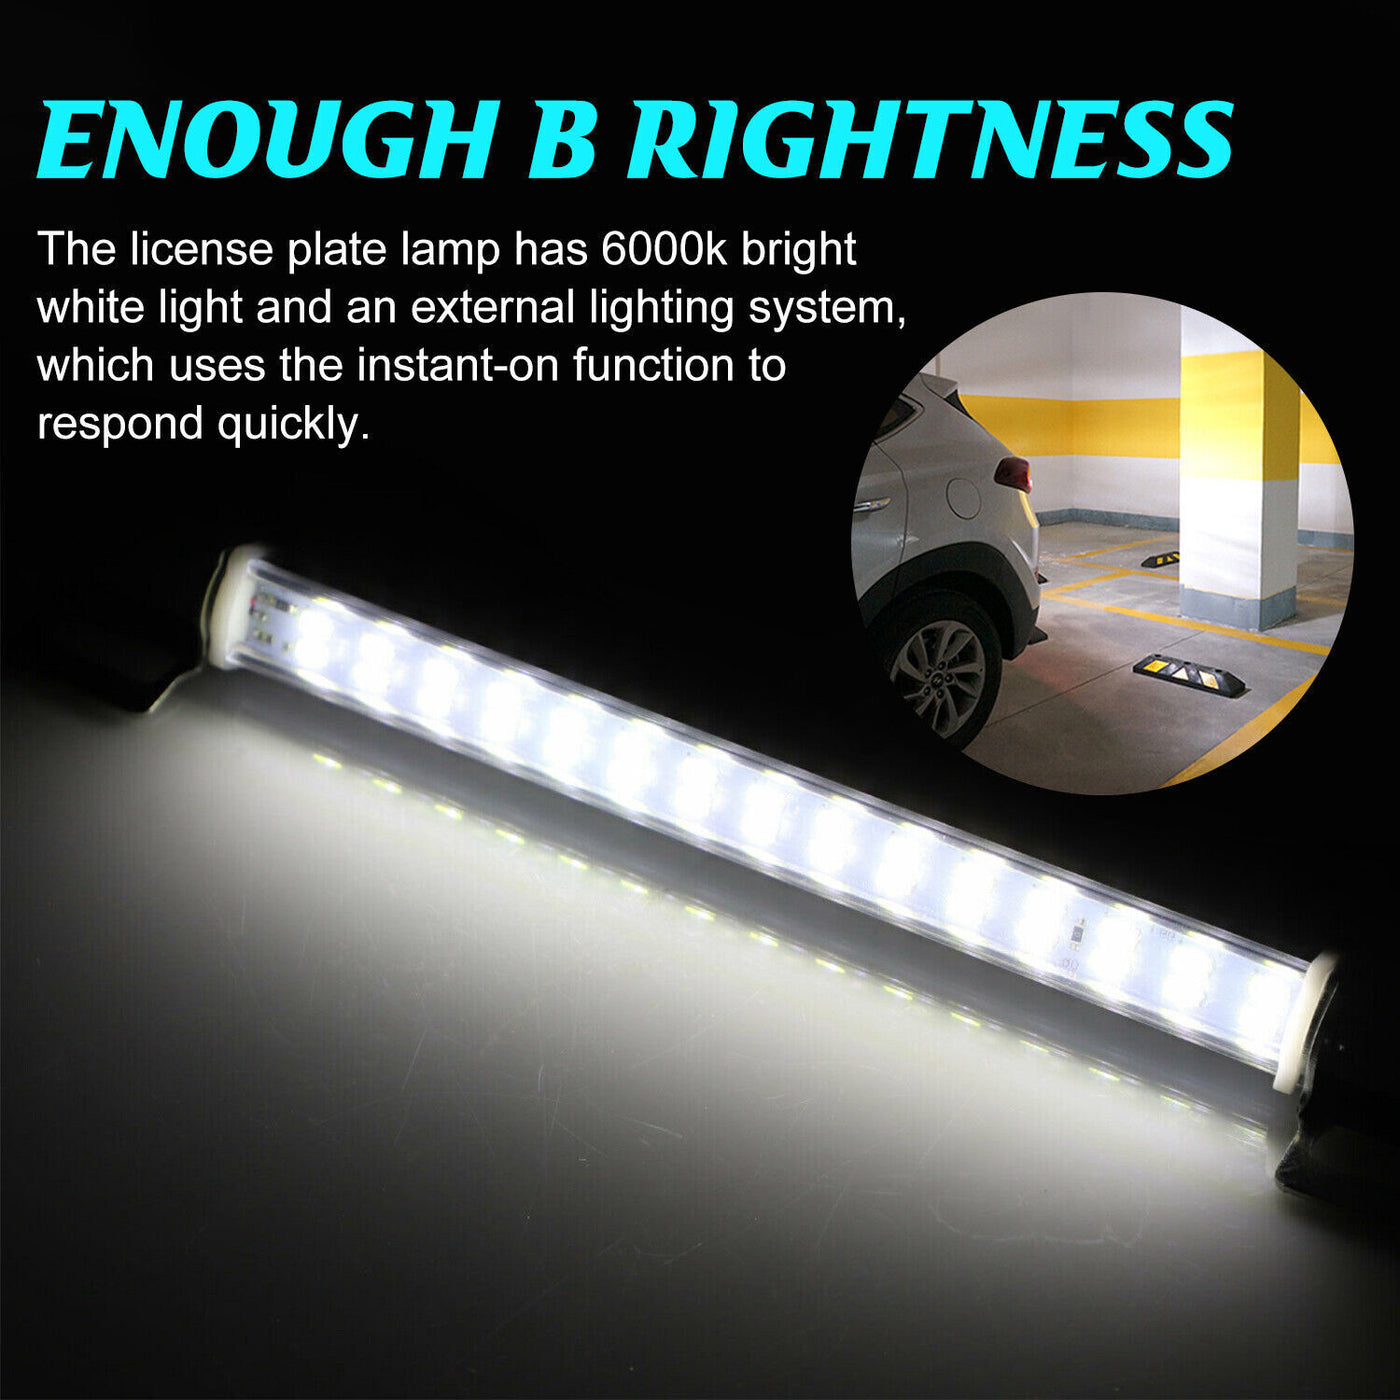 Universal License Plate LED Lamp Back Light Bar For Car SUV Truck RV 6000K White